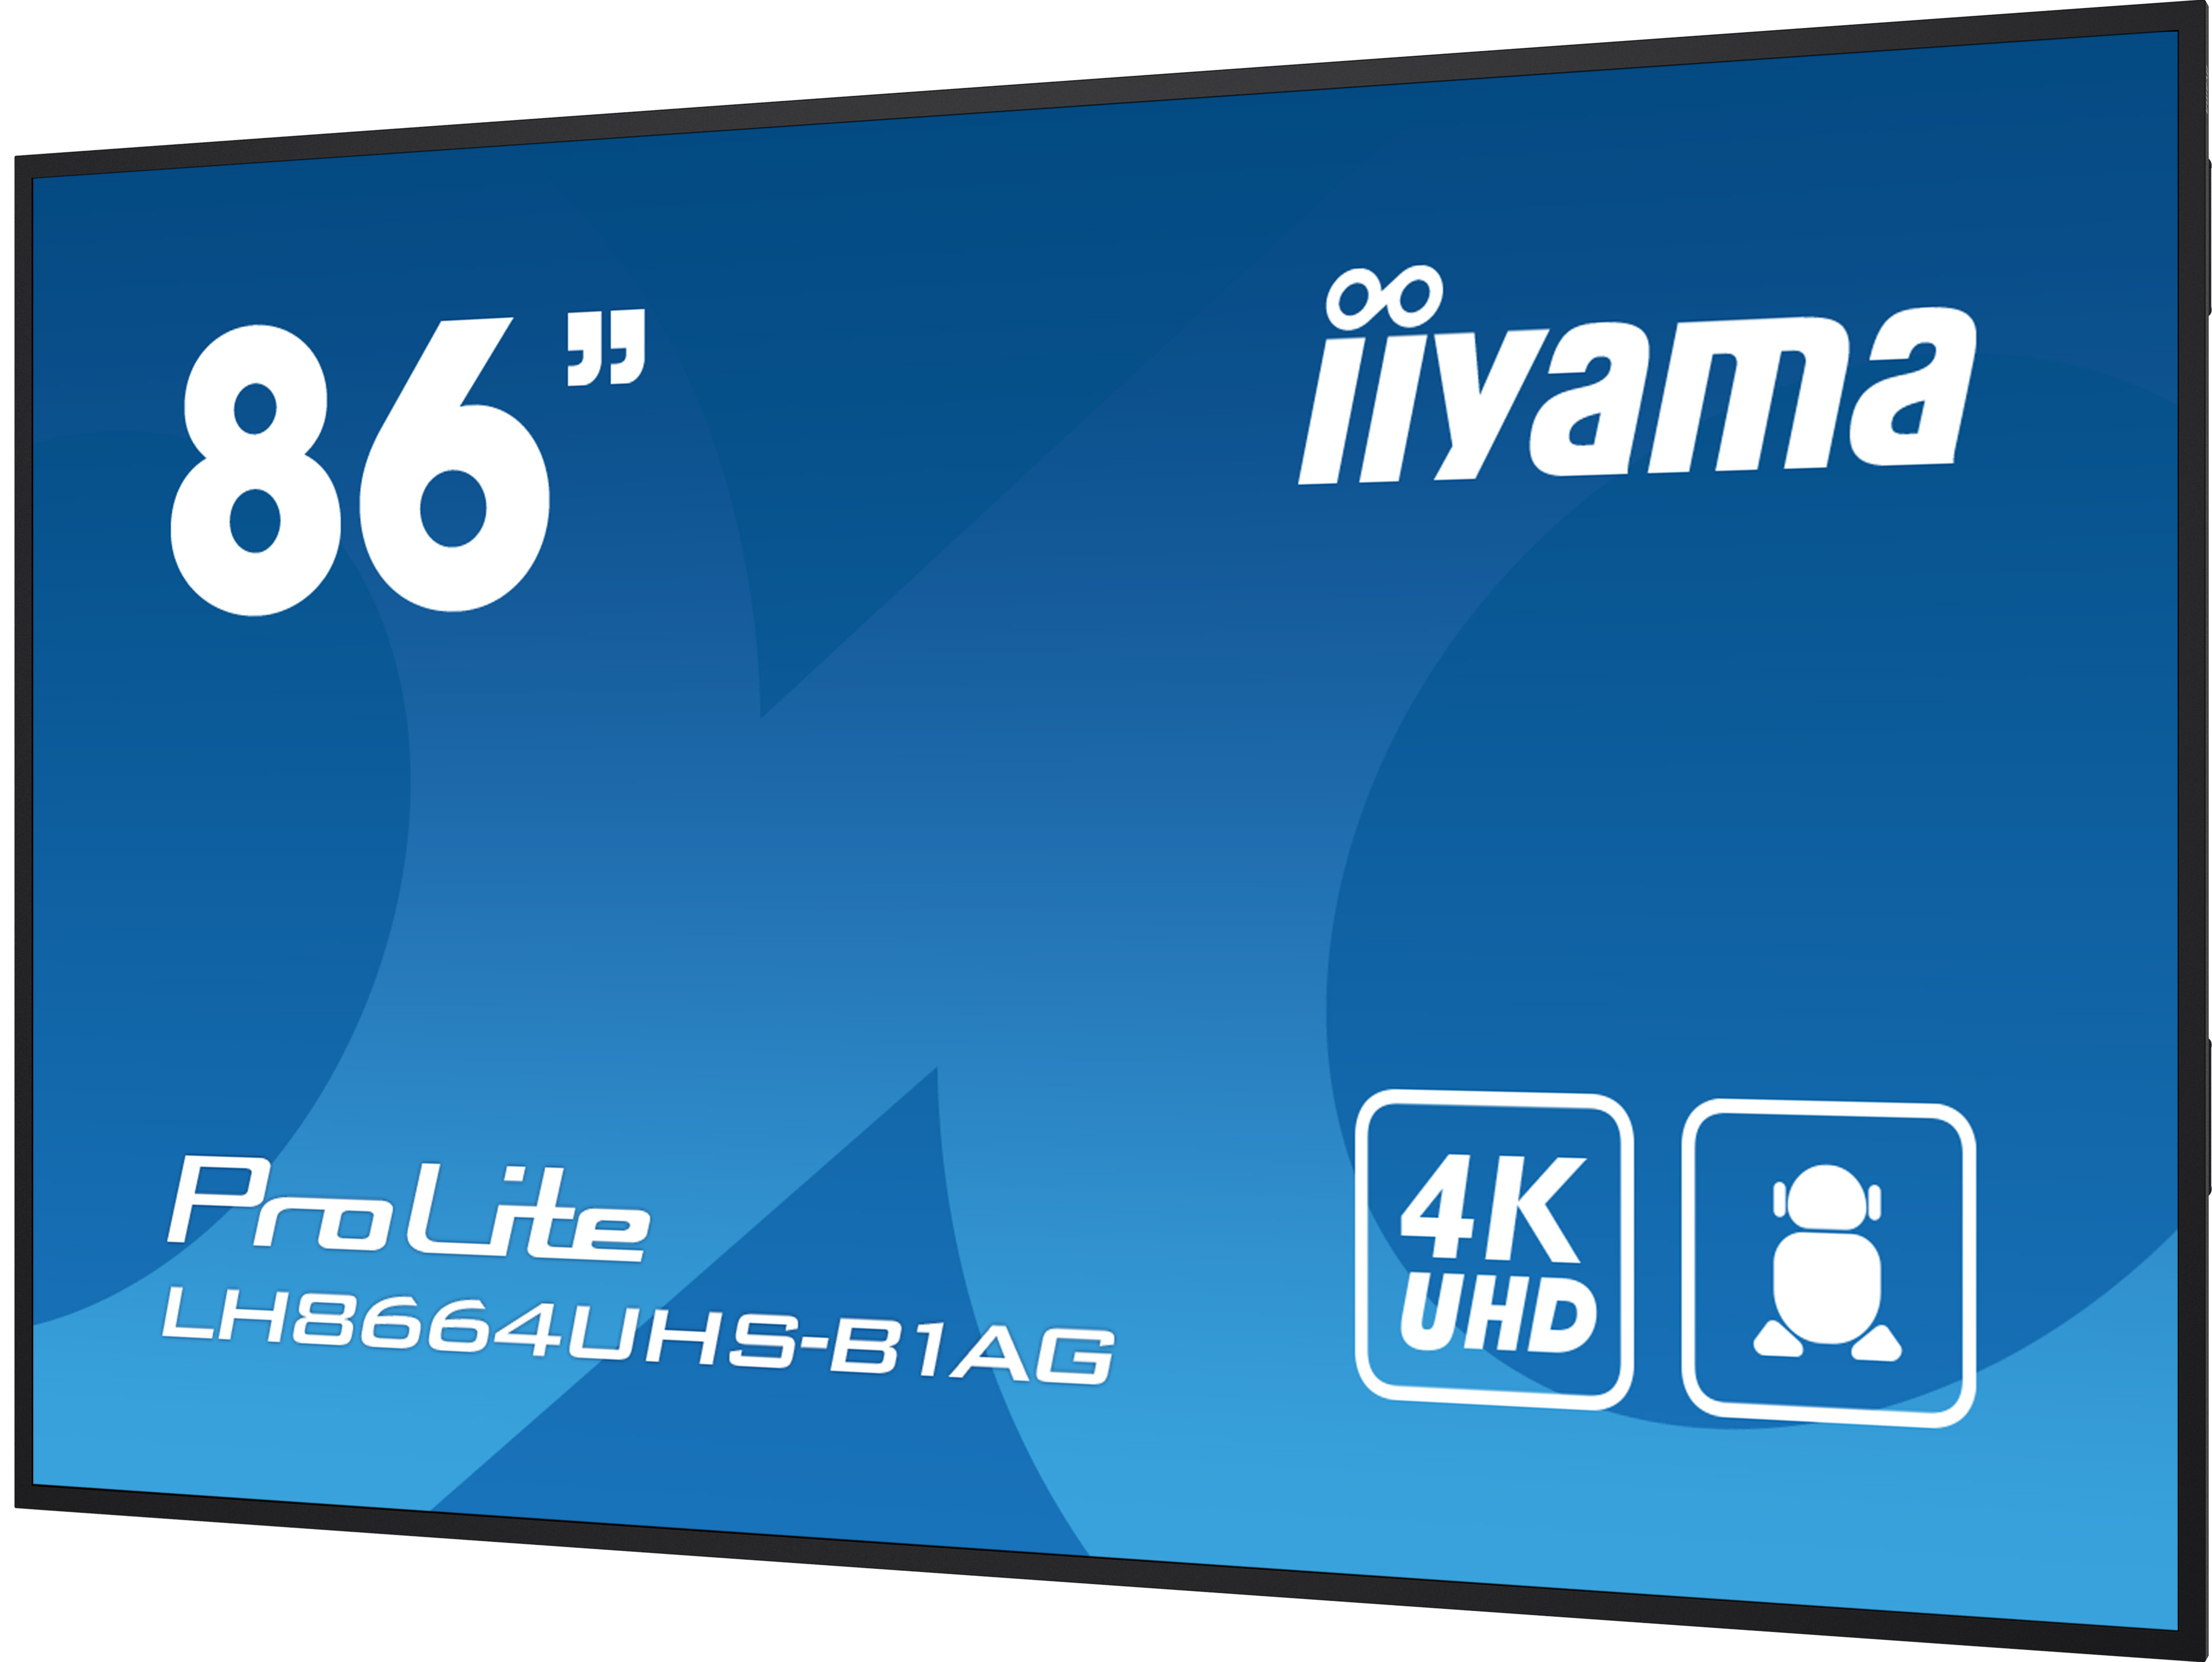 86" iiyama LH8664UHS-B1AG 